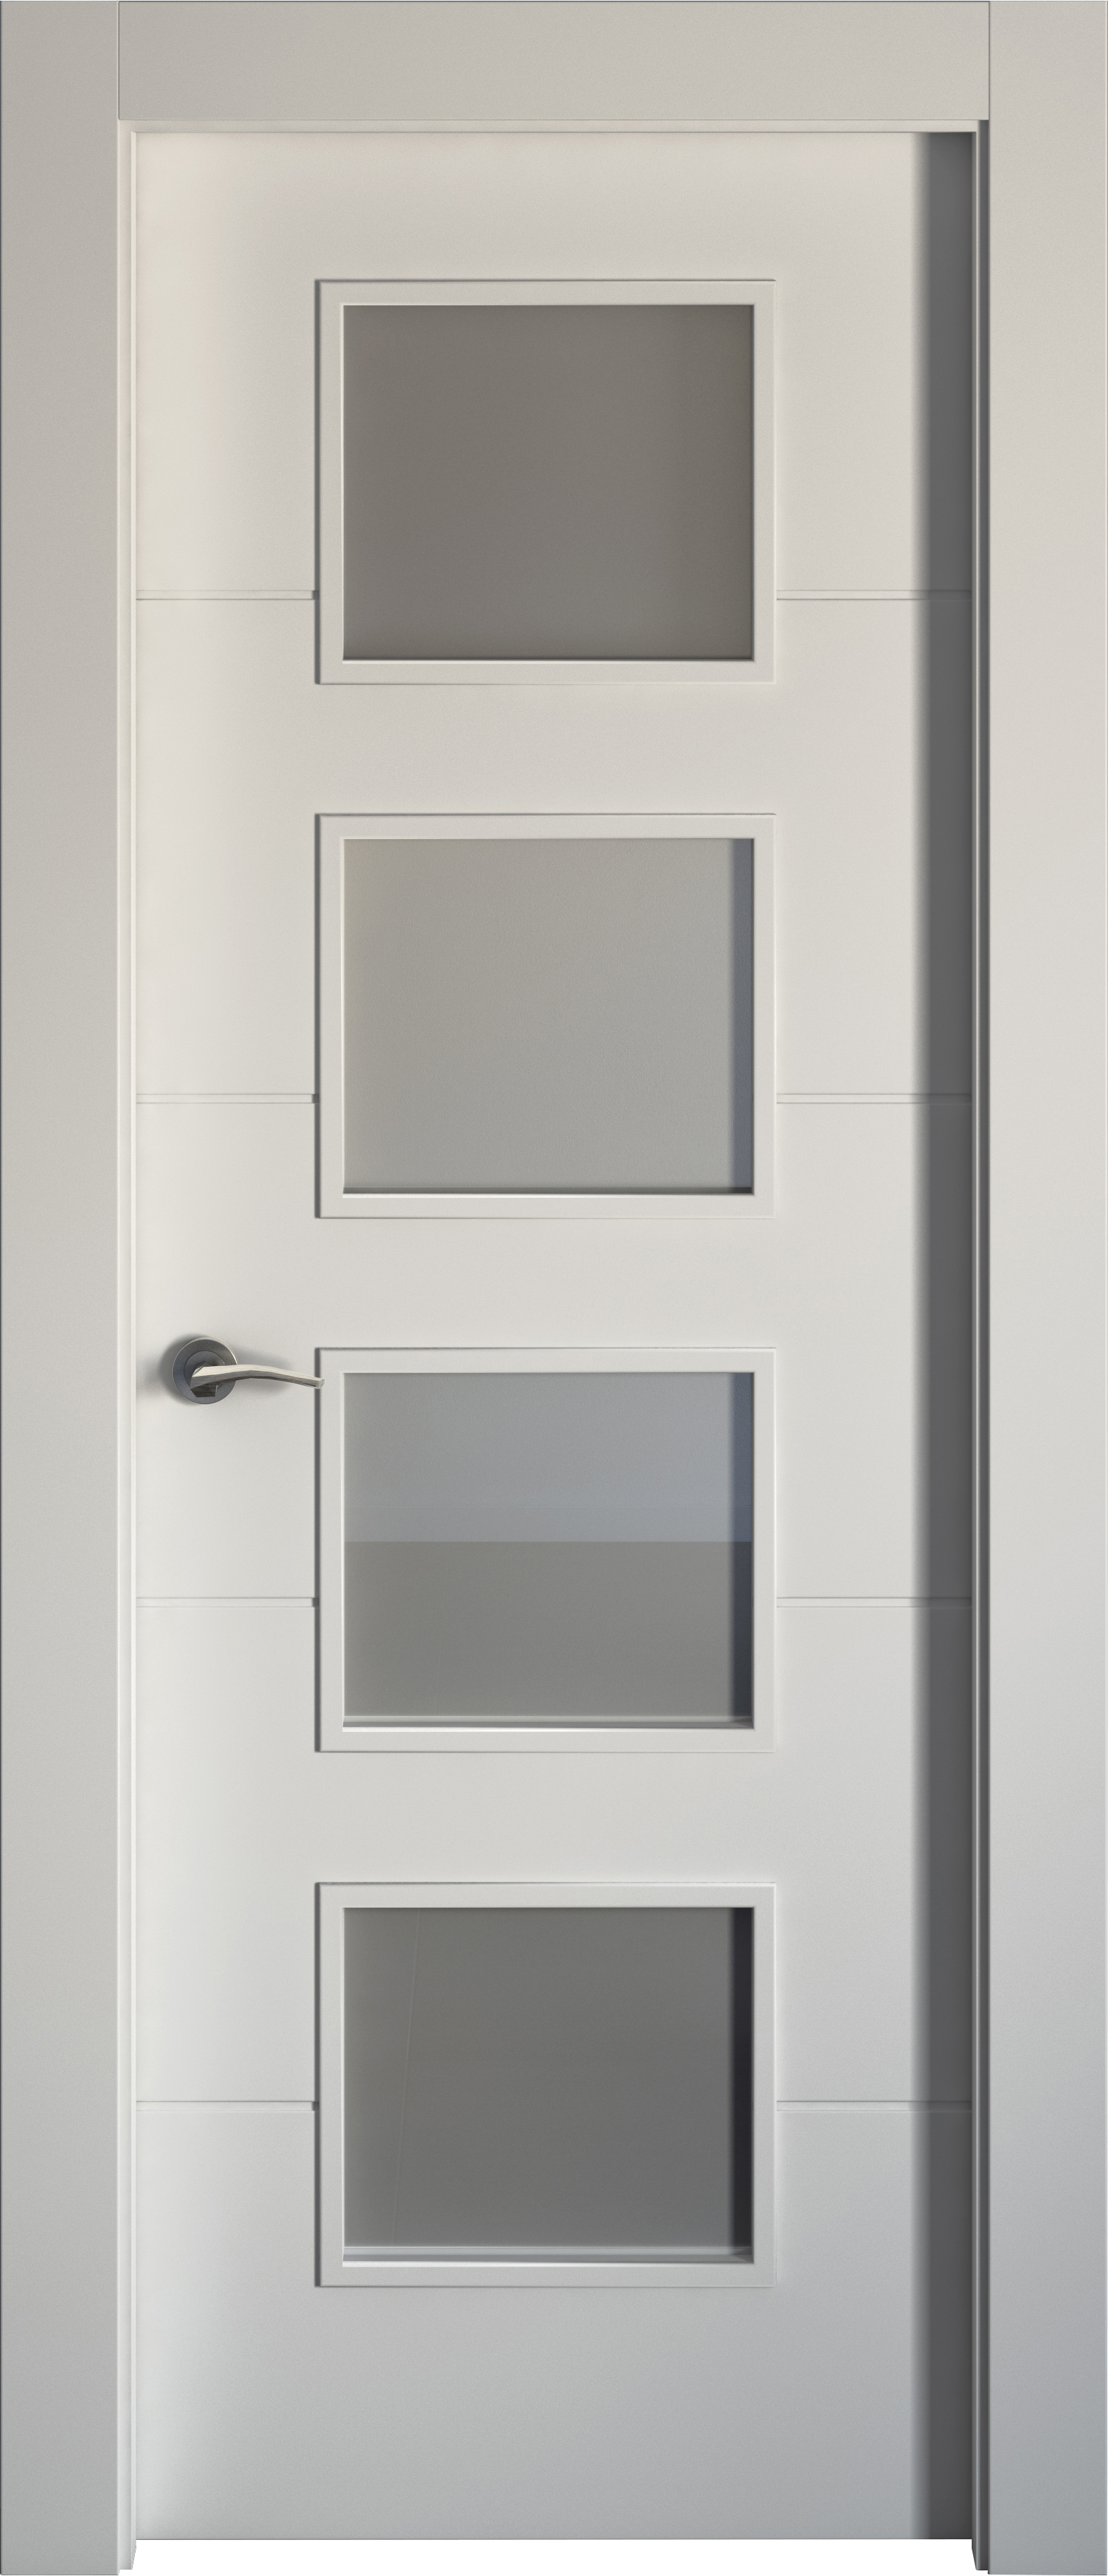 Puerta holanda blanco apertura derecha con cristal62.5cm